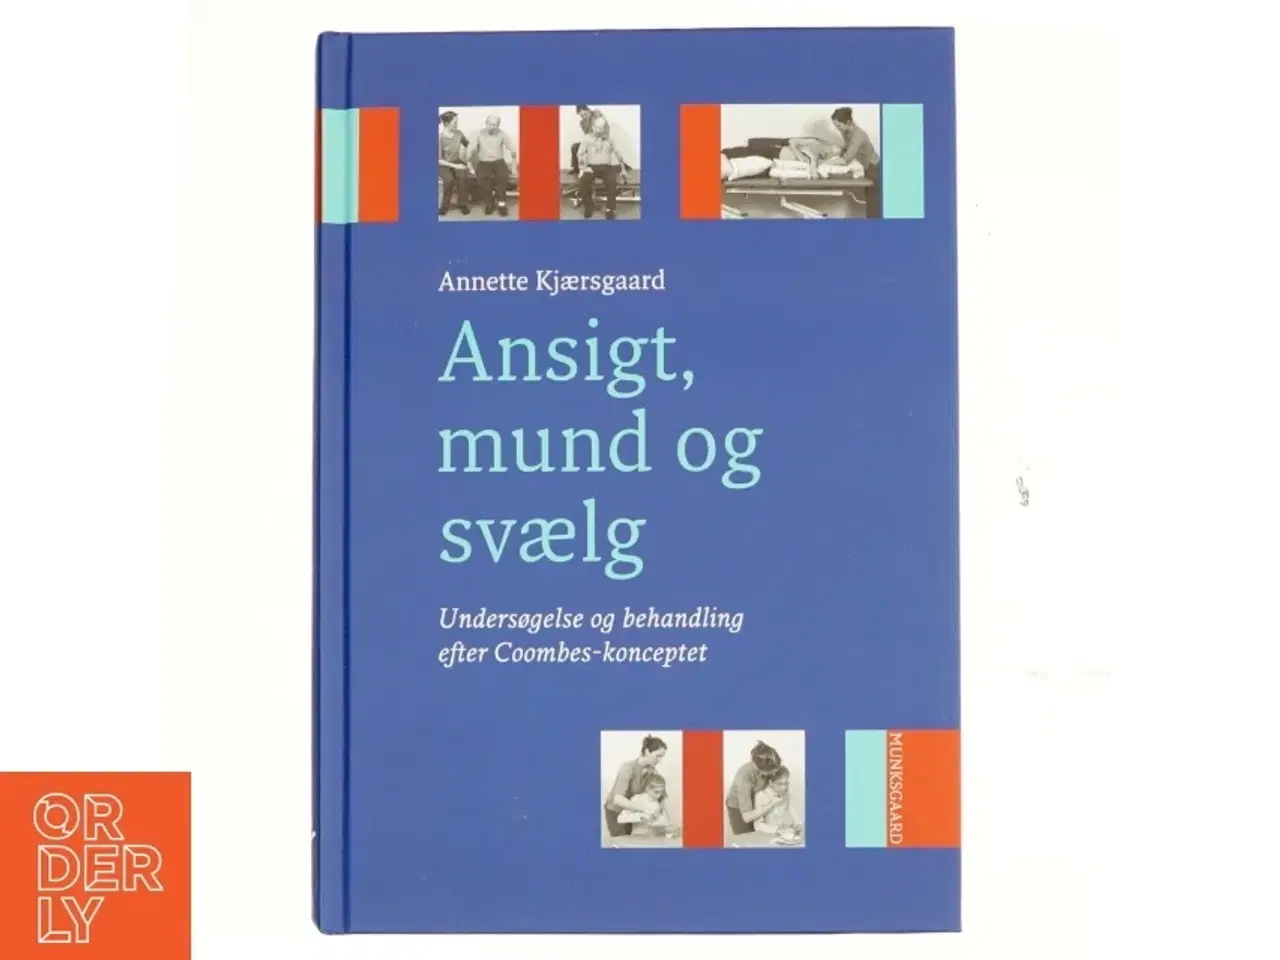 Billede 1 - Ansigt, mund og svælg : undersøgelse og behandling af dysfagi og tilgrænsende problemer af Annette Kjærsgaard (Bog)